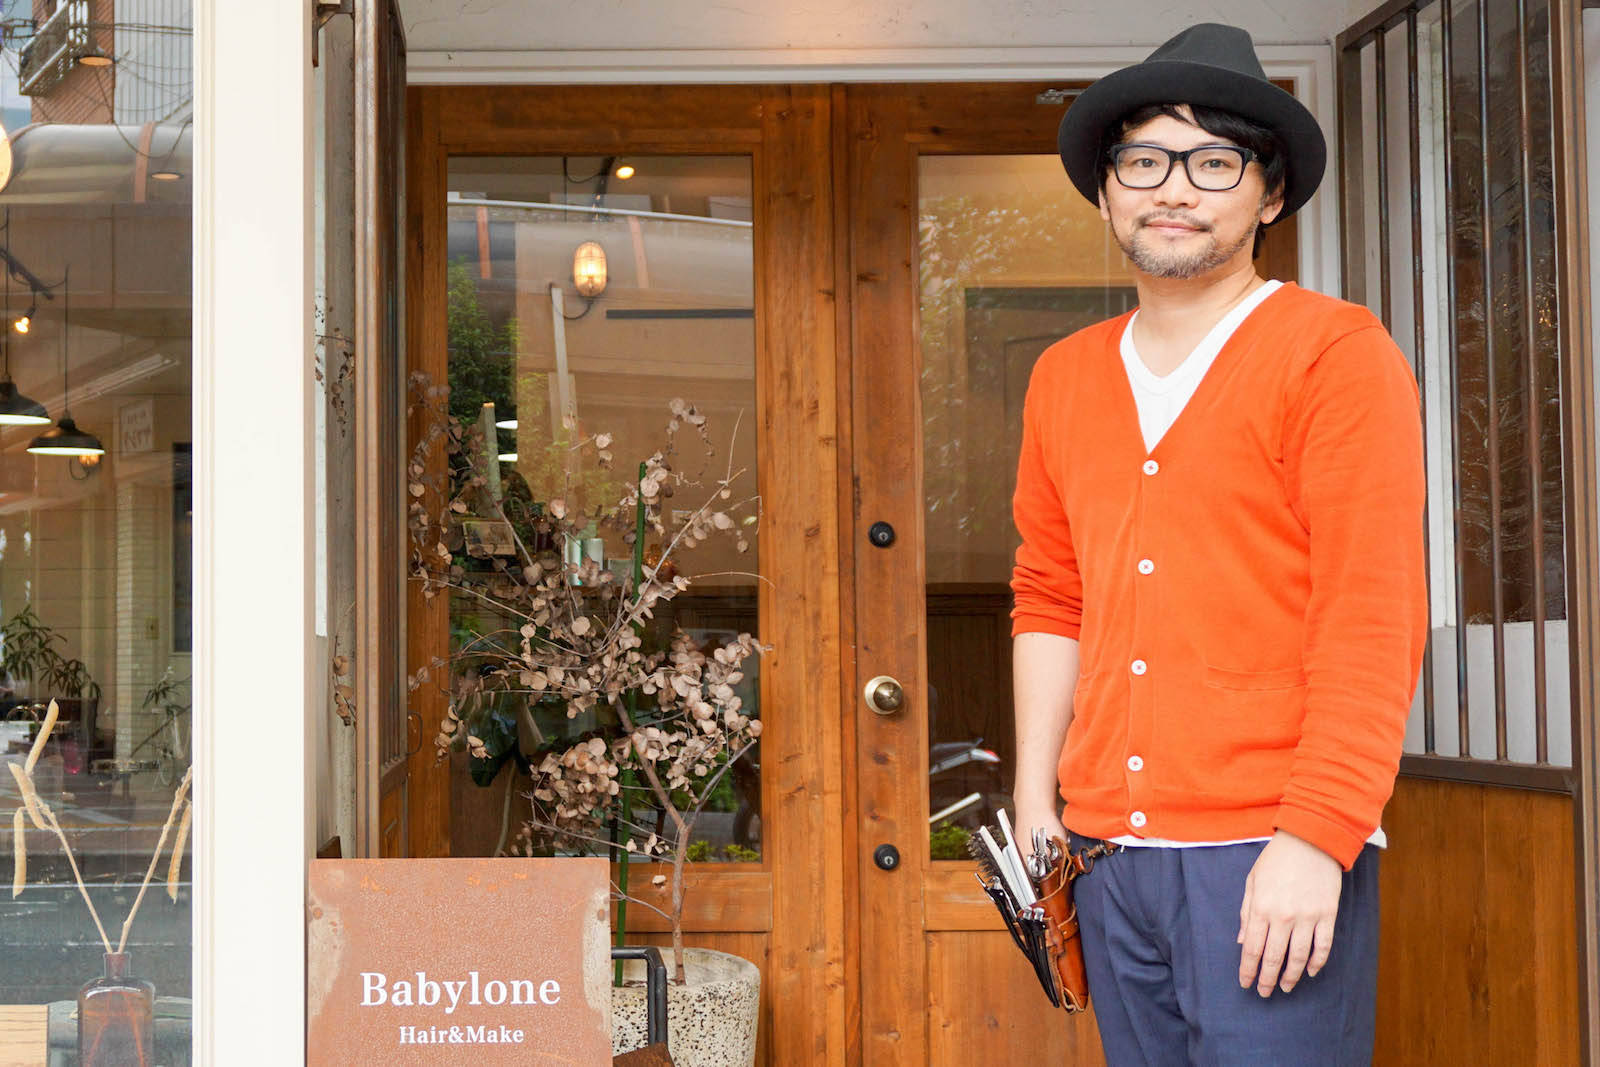 【まちなかストーリー】ヘアサロン バビロン(Babylone) 松谷政寿さん 第１回「ヘアメイク・美容師を志したきっかけと浜松で起業したわけ」